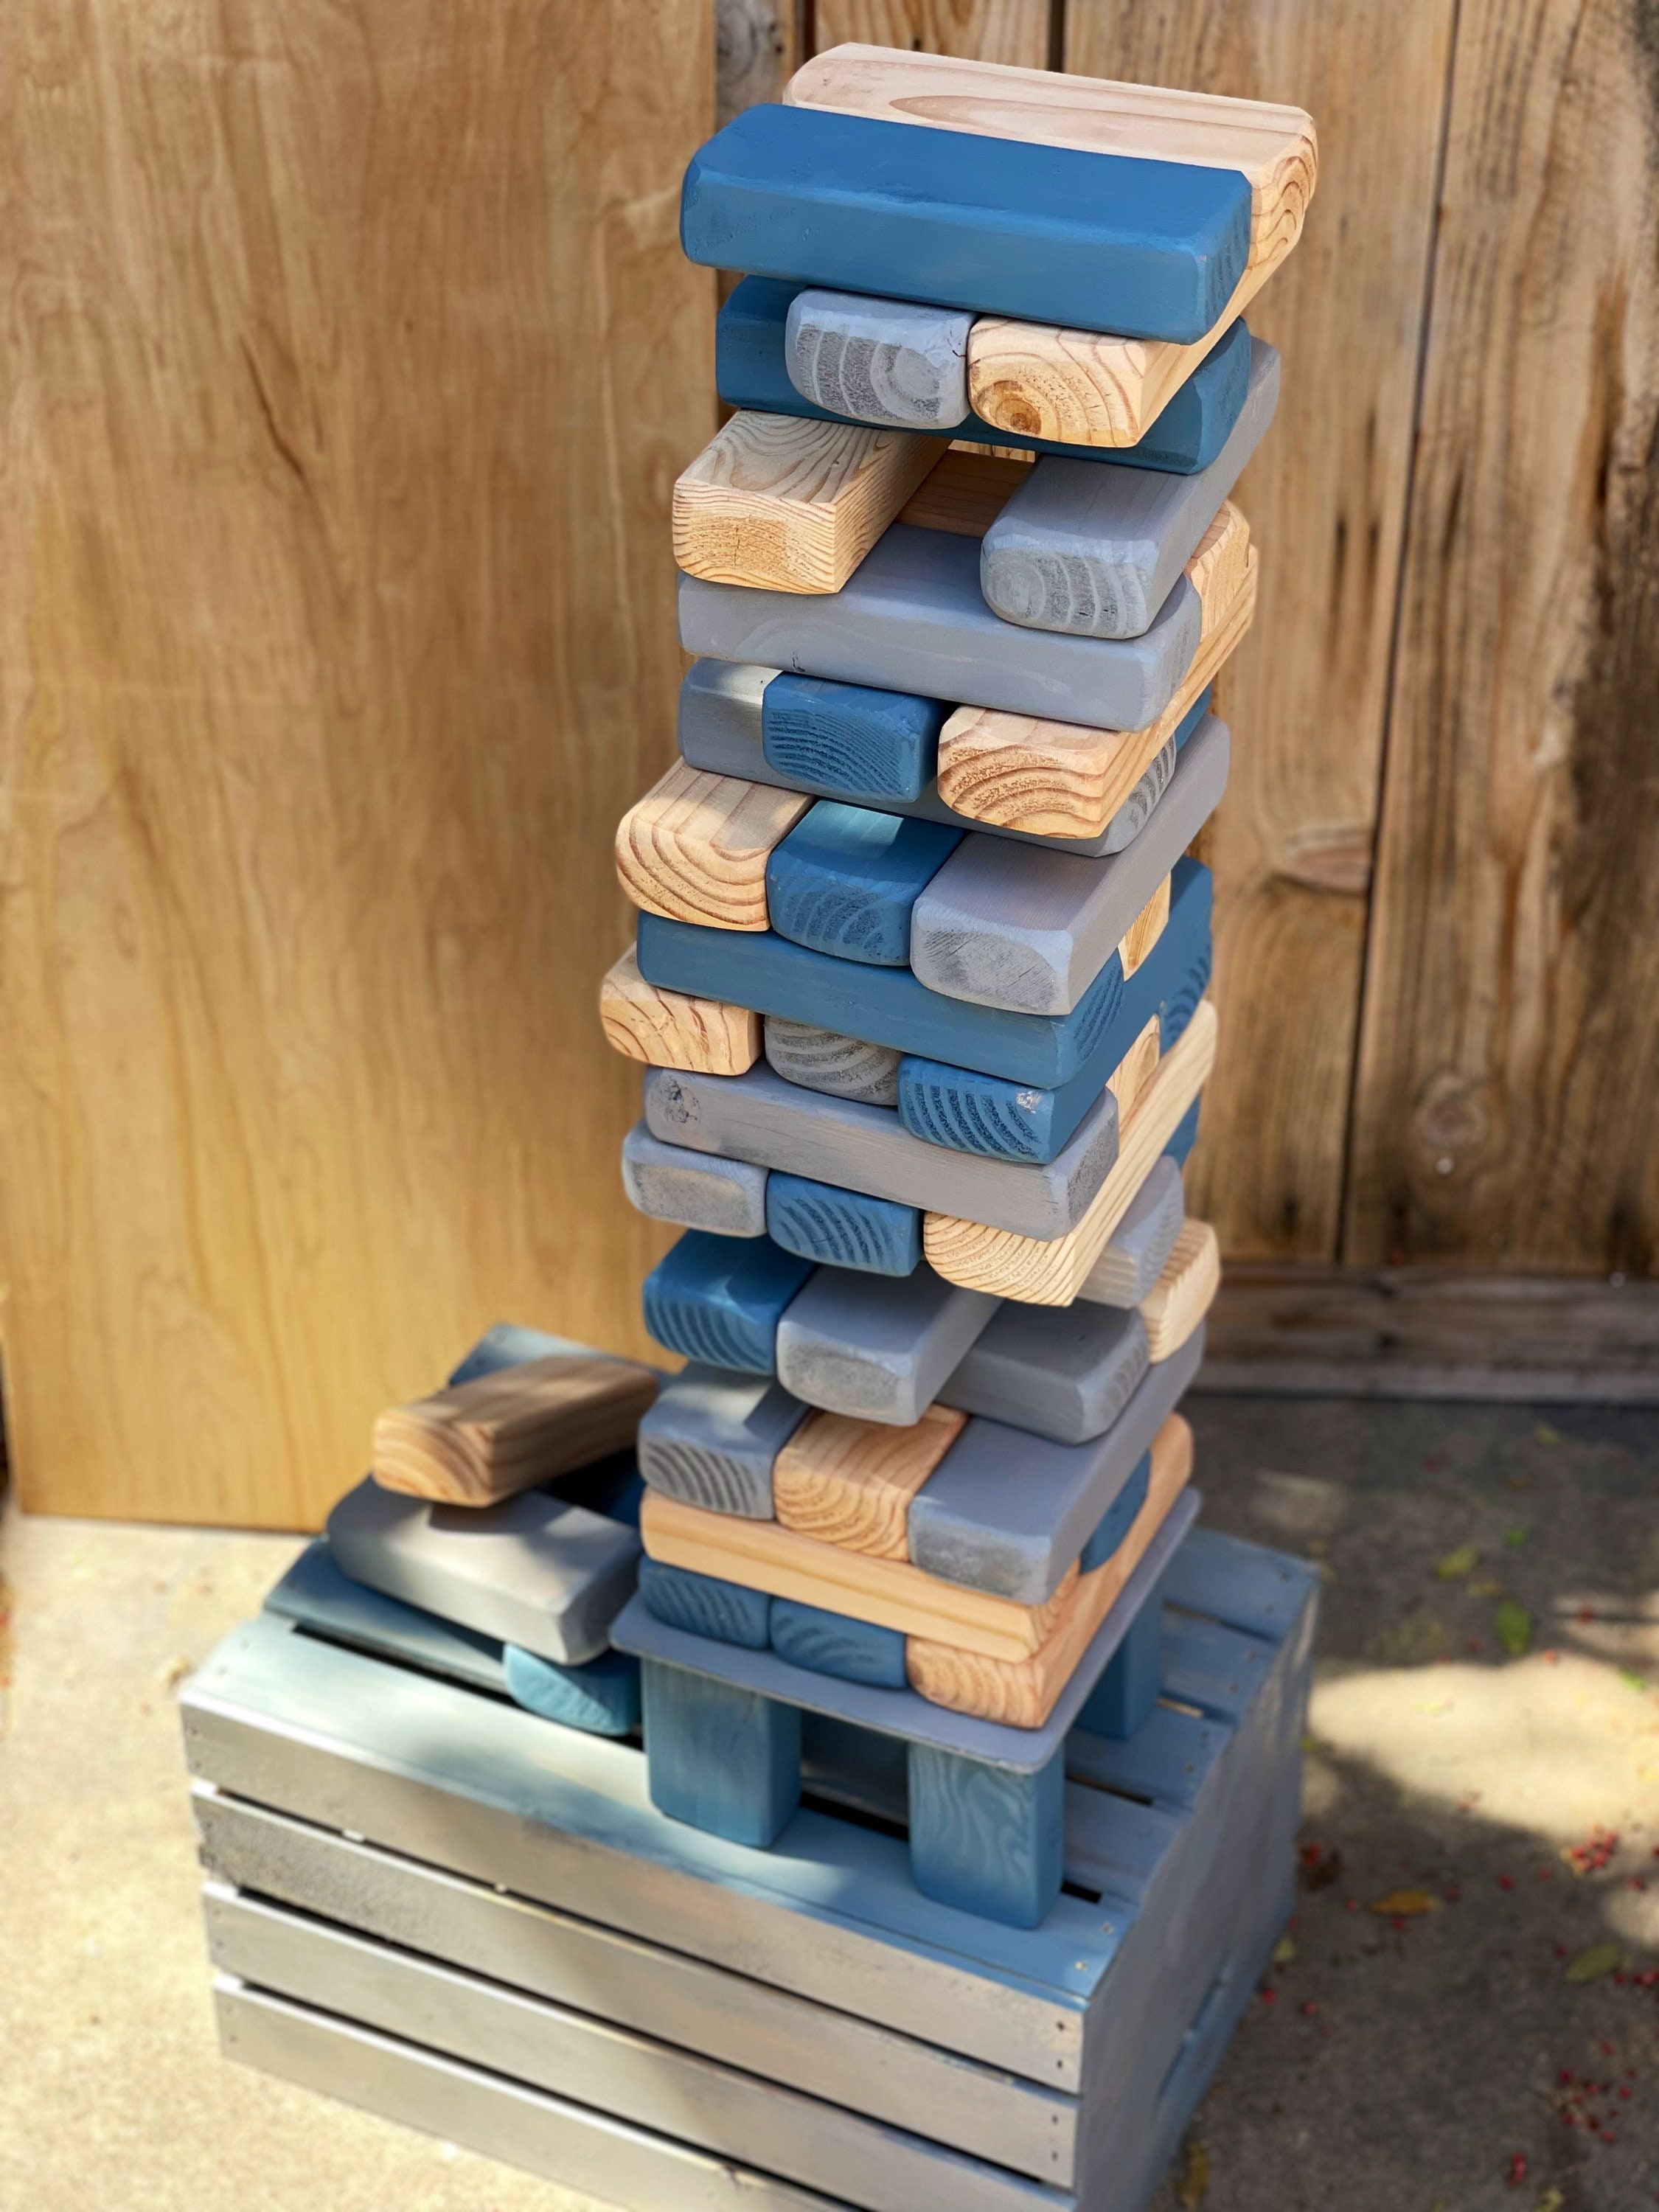 YardGames Large Tumbling Timbers Stacking Game w/ 54 Premium Pine Blocks  (Used)